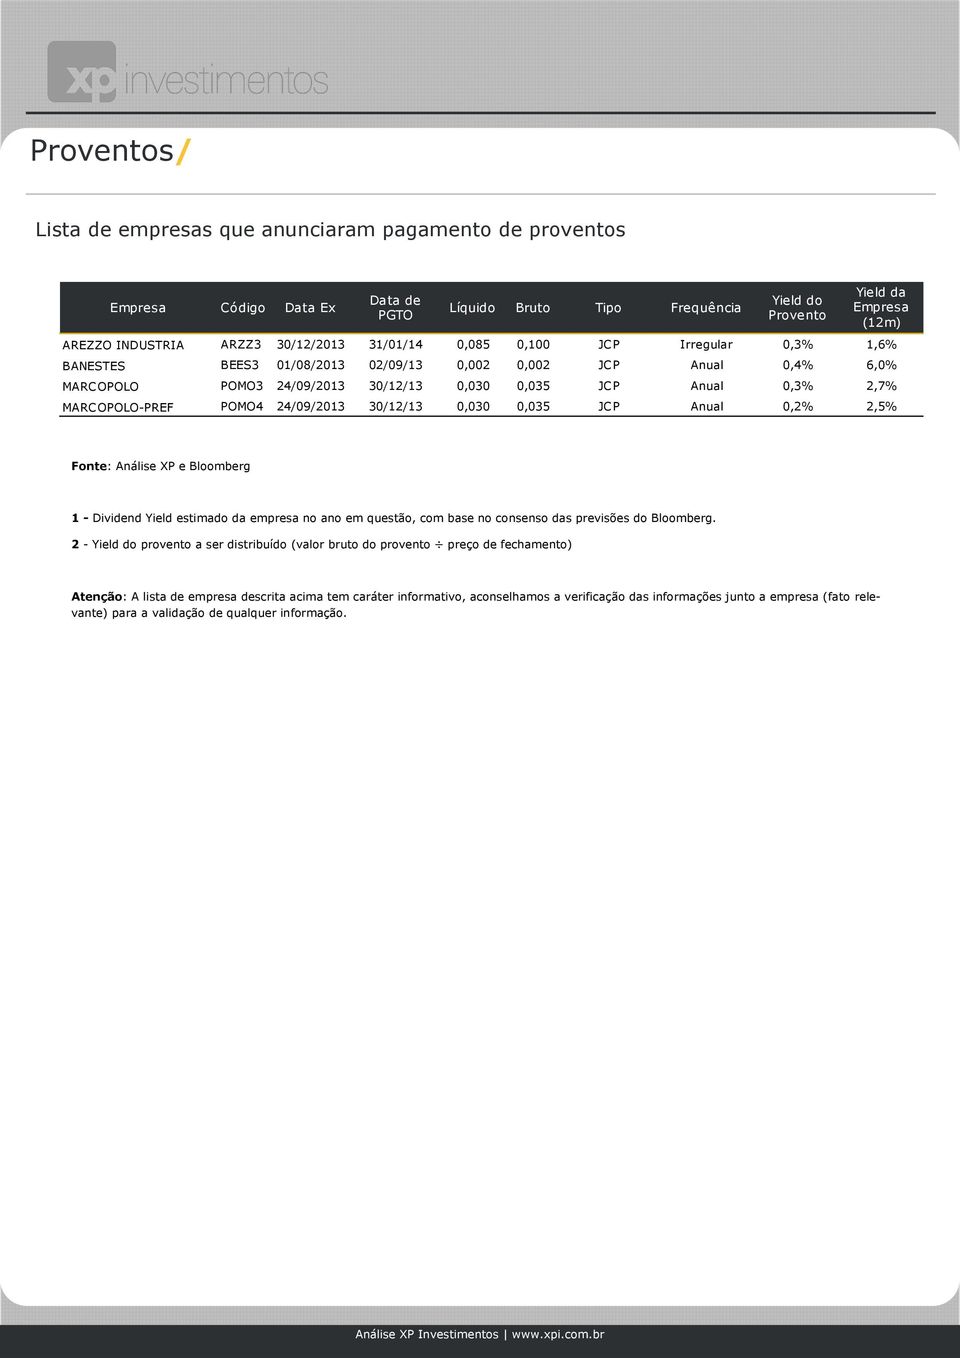 MARCOPOLO-PREF POMO4 24/09/2013 30/12/13 0,030 0,035 JCP Anual 0,2% 2,5% 1 - Dividend Yield estimado da empresa no ano em questão, com base no consenso das previsões do Bloomberg.